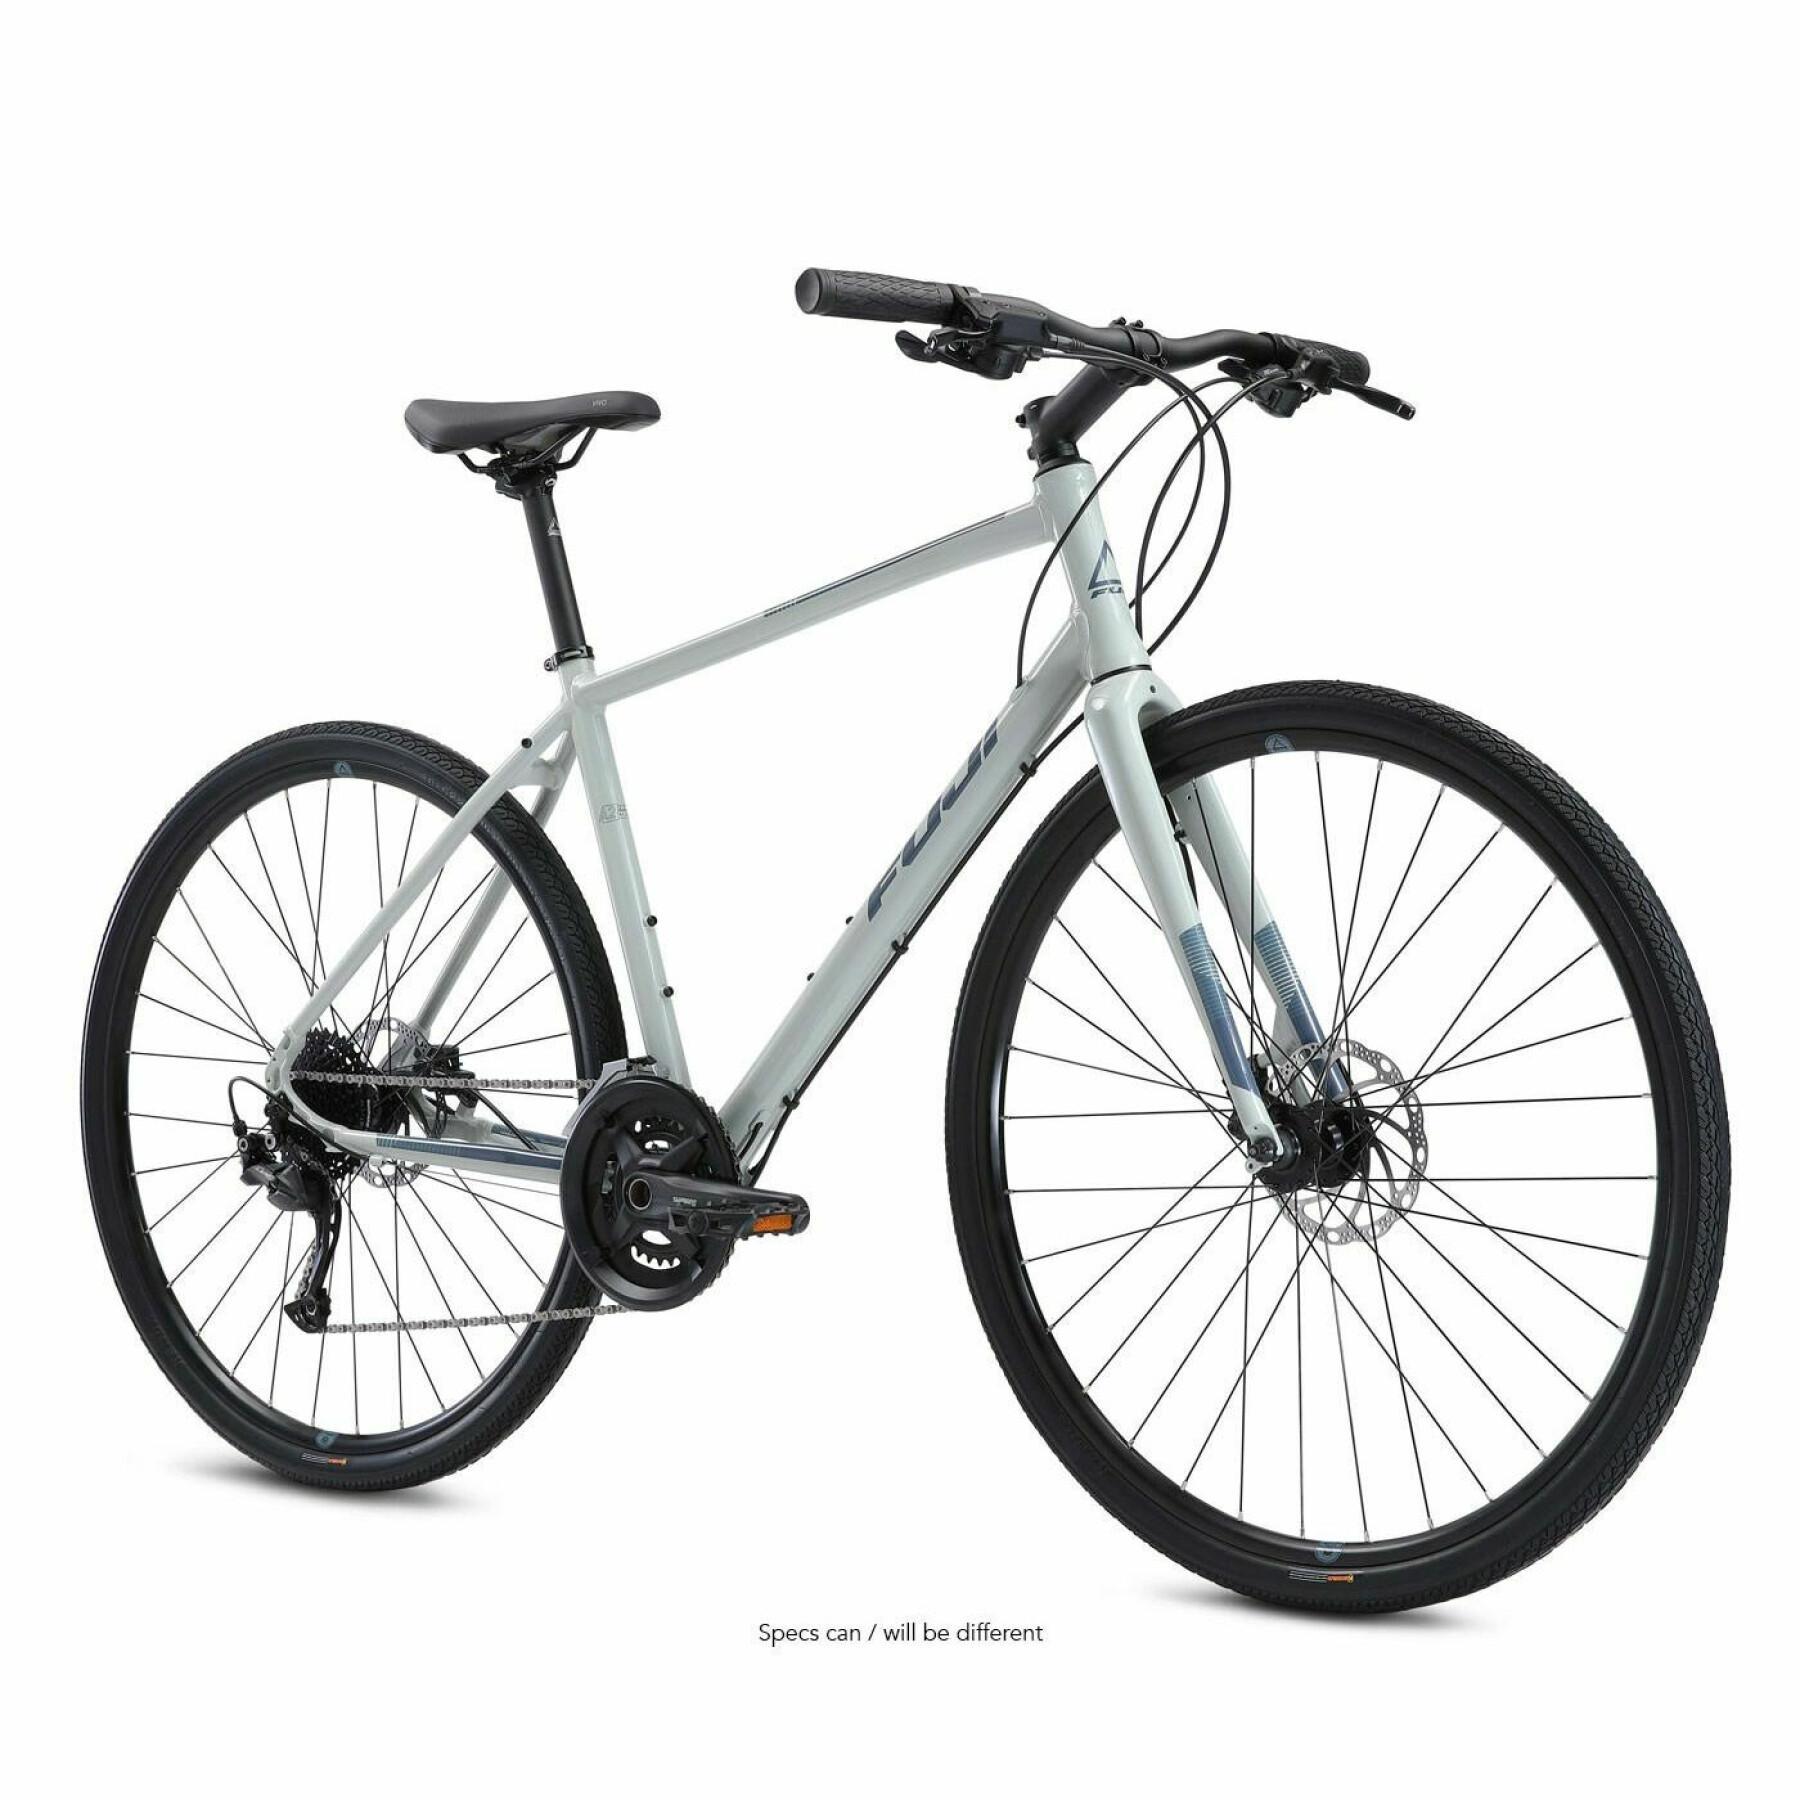 Bicicleta Fuji Absolute 1.7 2022